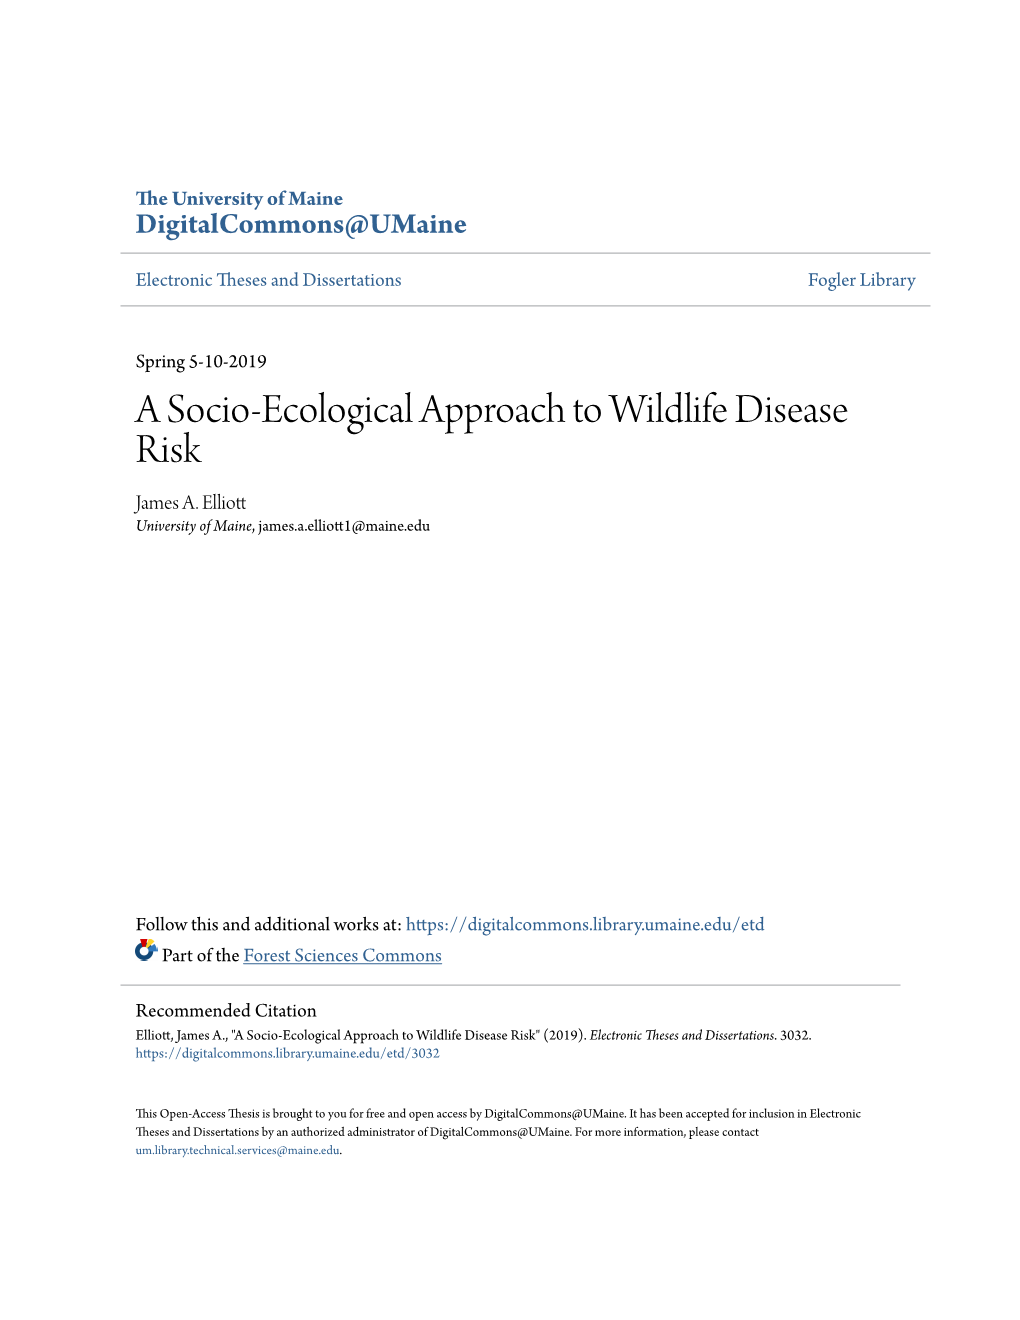 A Socio-Ecological Approach to Wildlife Disease Risk James A